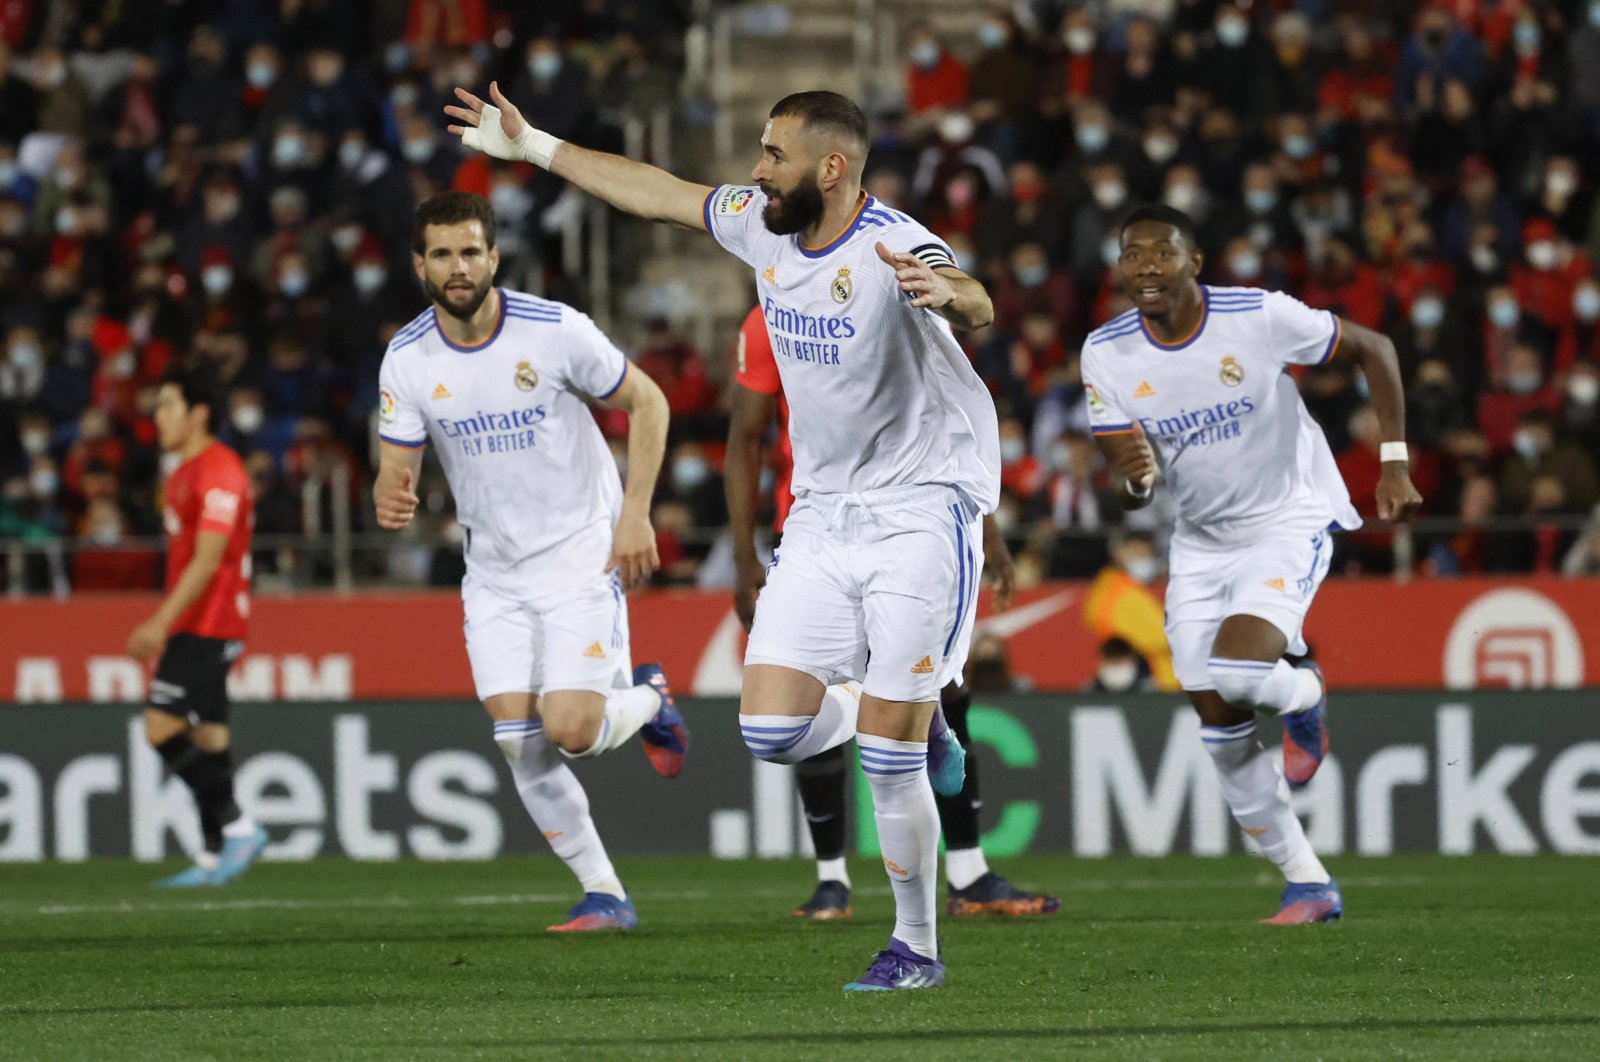 Real unggul 10 gol setelah dua gol Benzema membawa kemenangan atas Mallorca